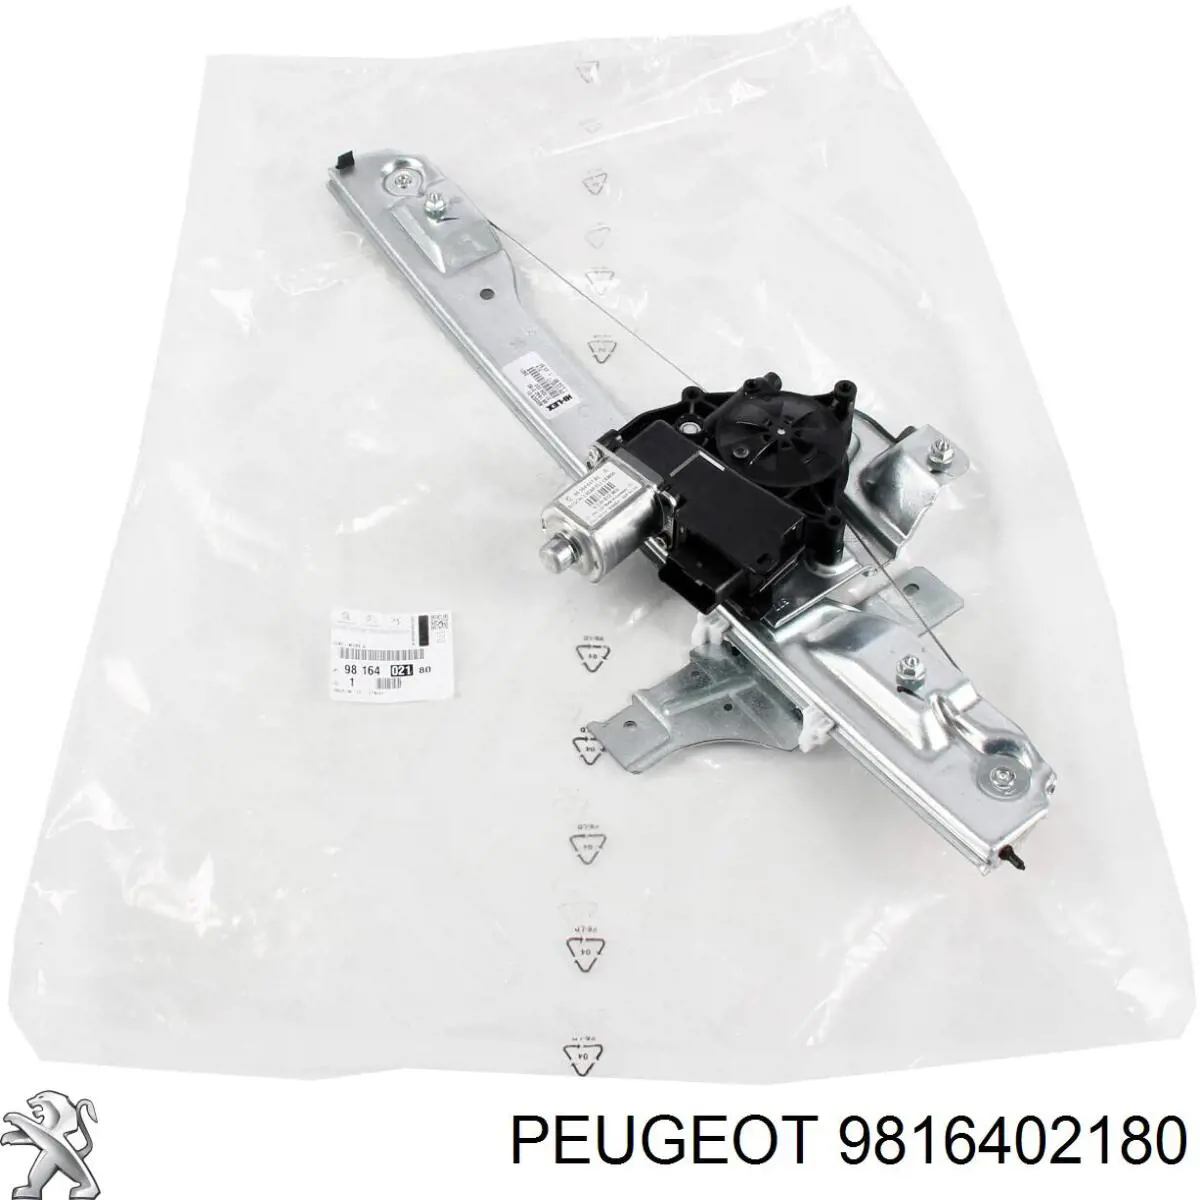 9816402180 Peugeot/Citroen mecanismo de acionamento de vidro da porta dianteira esquerda